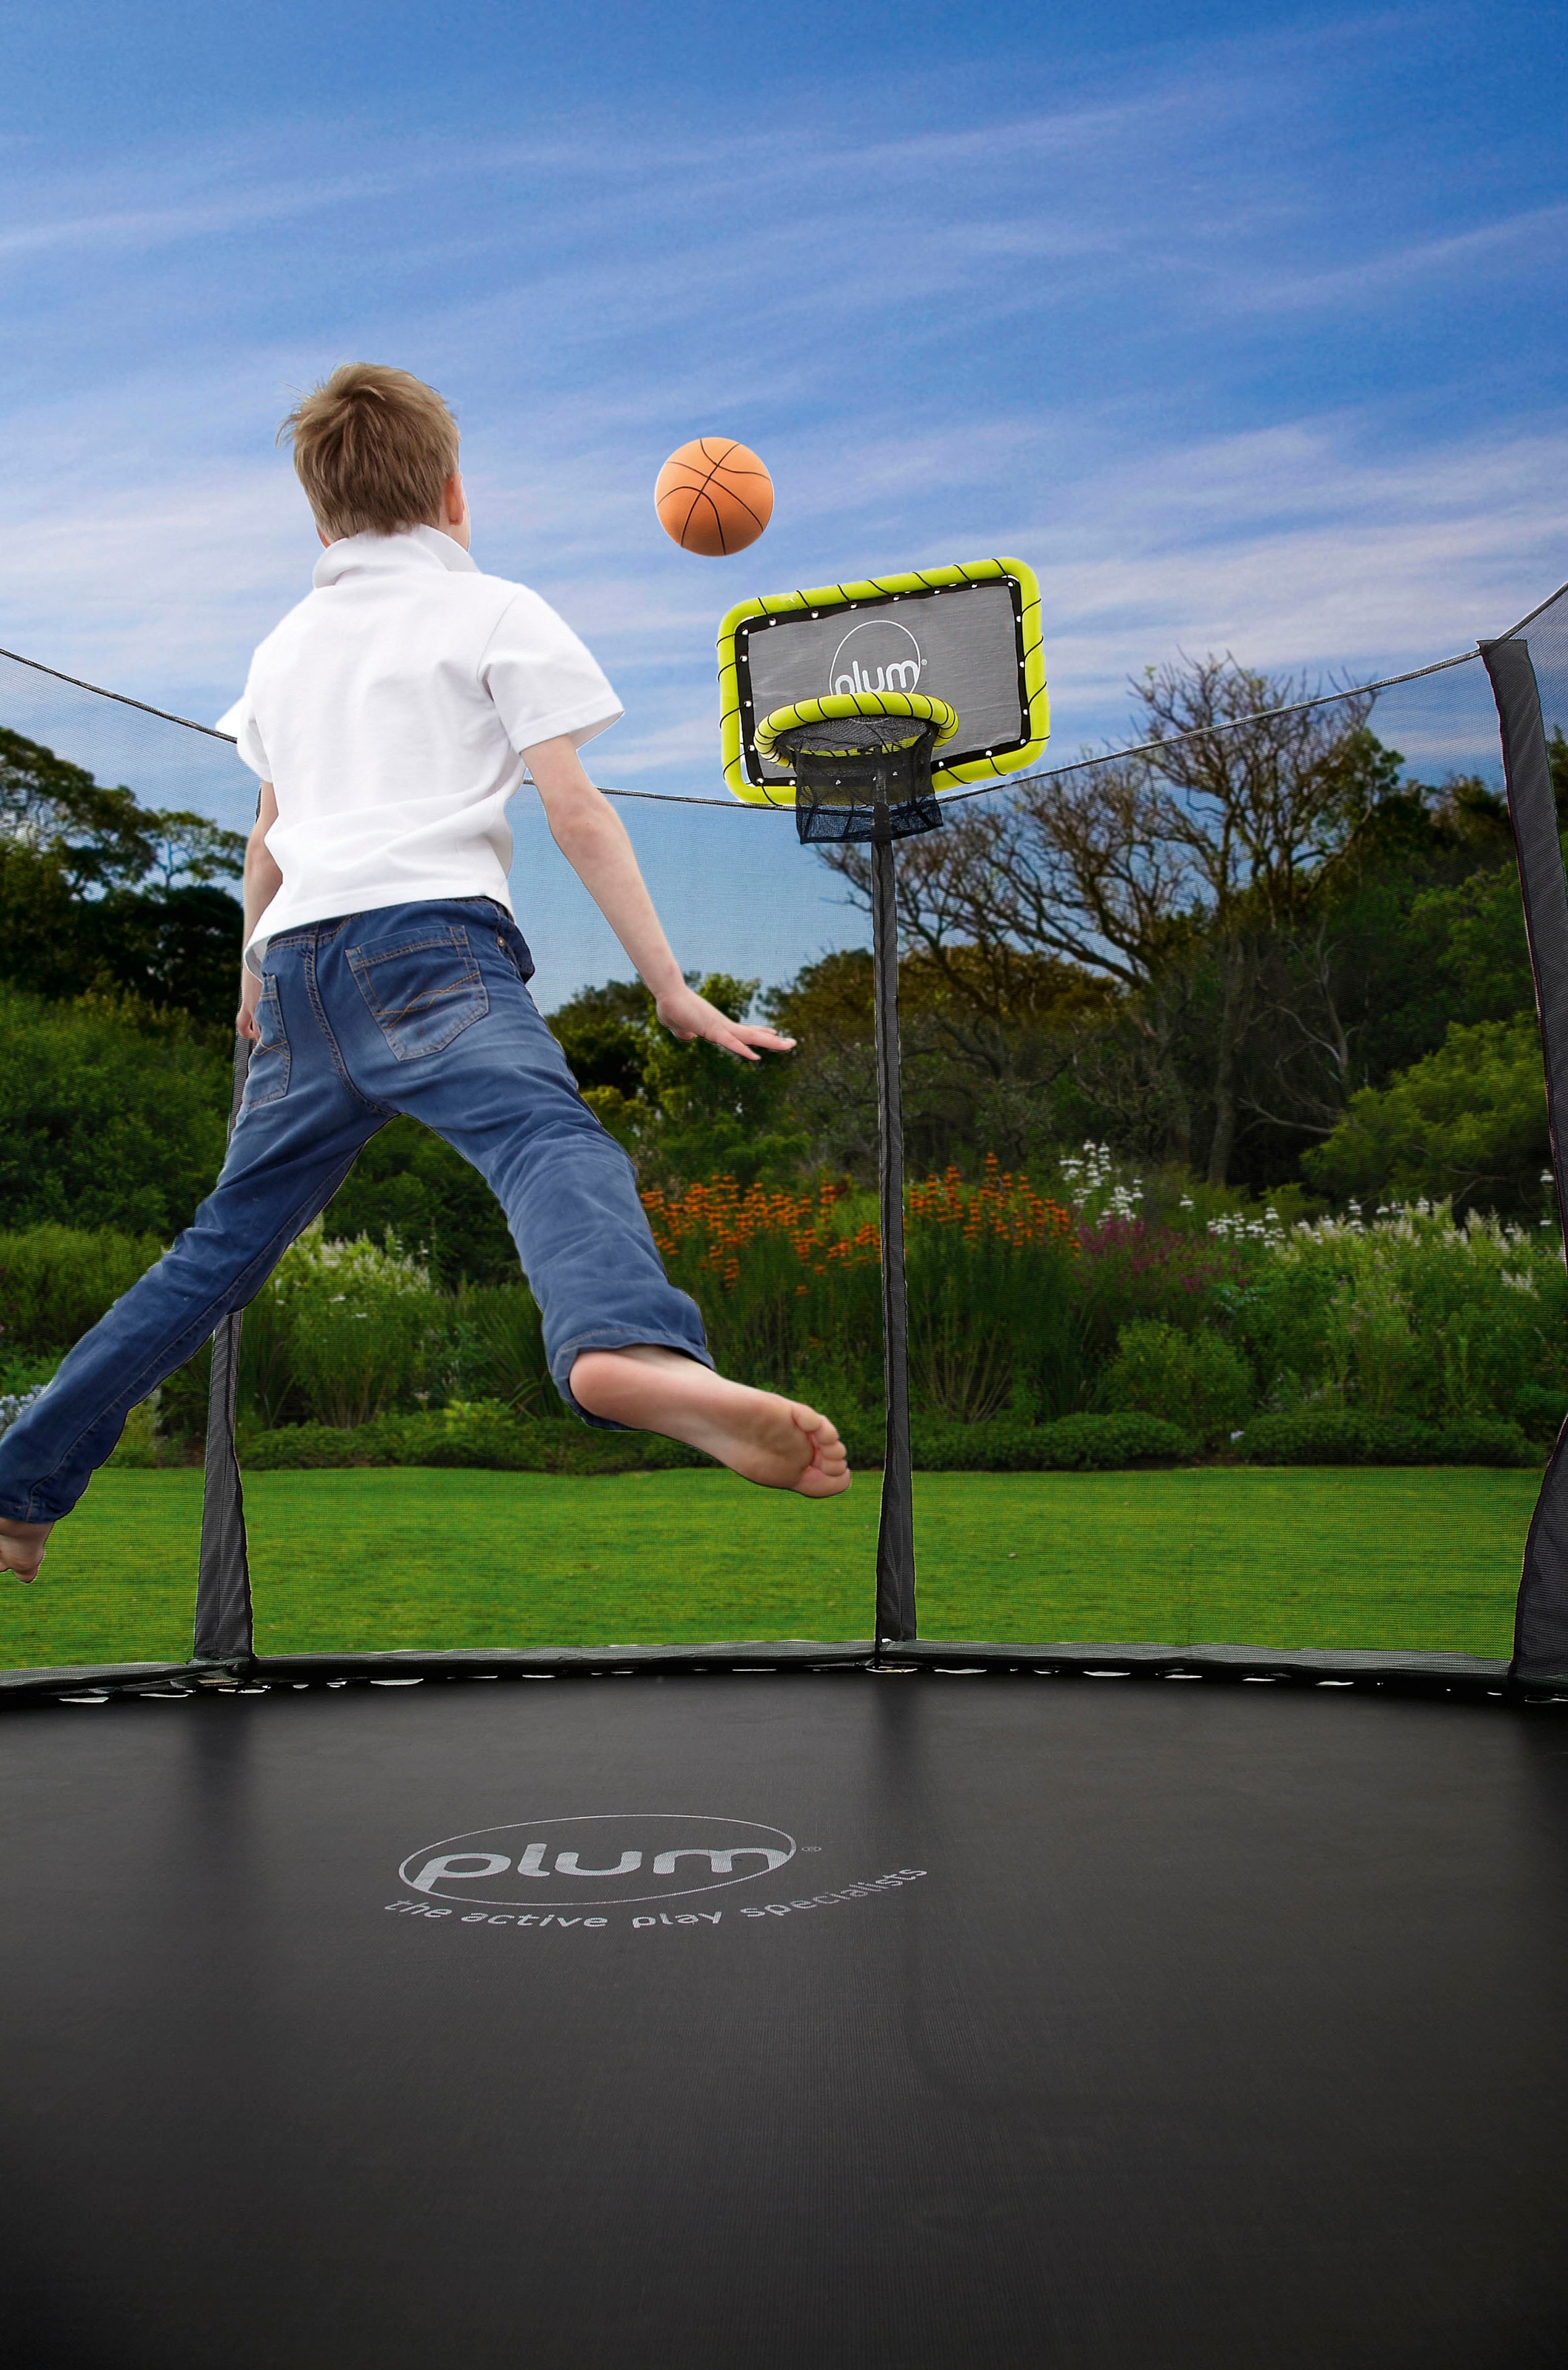 plum Basketballkorb, (Set), für Trampoline mit Sicherheitsnetz, 244-426 cm Durchmesser